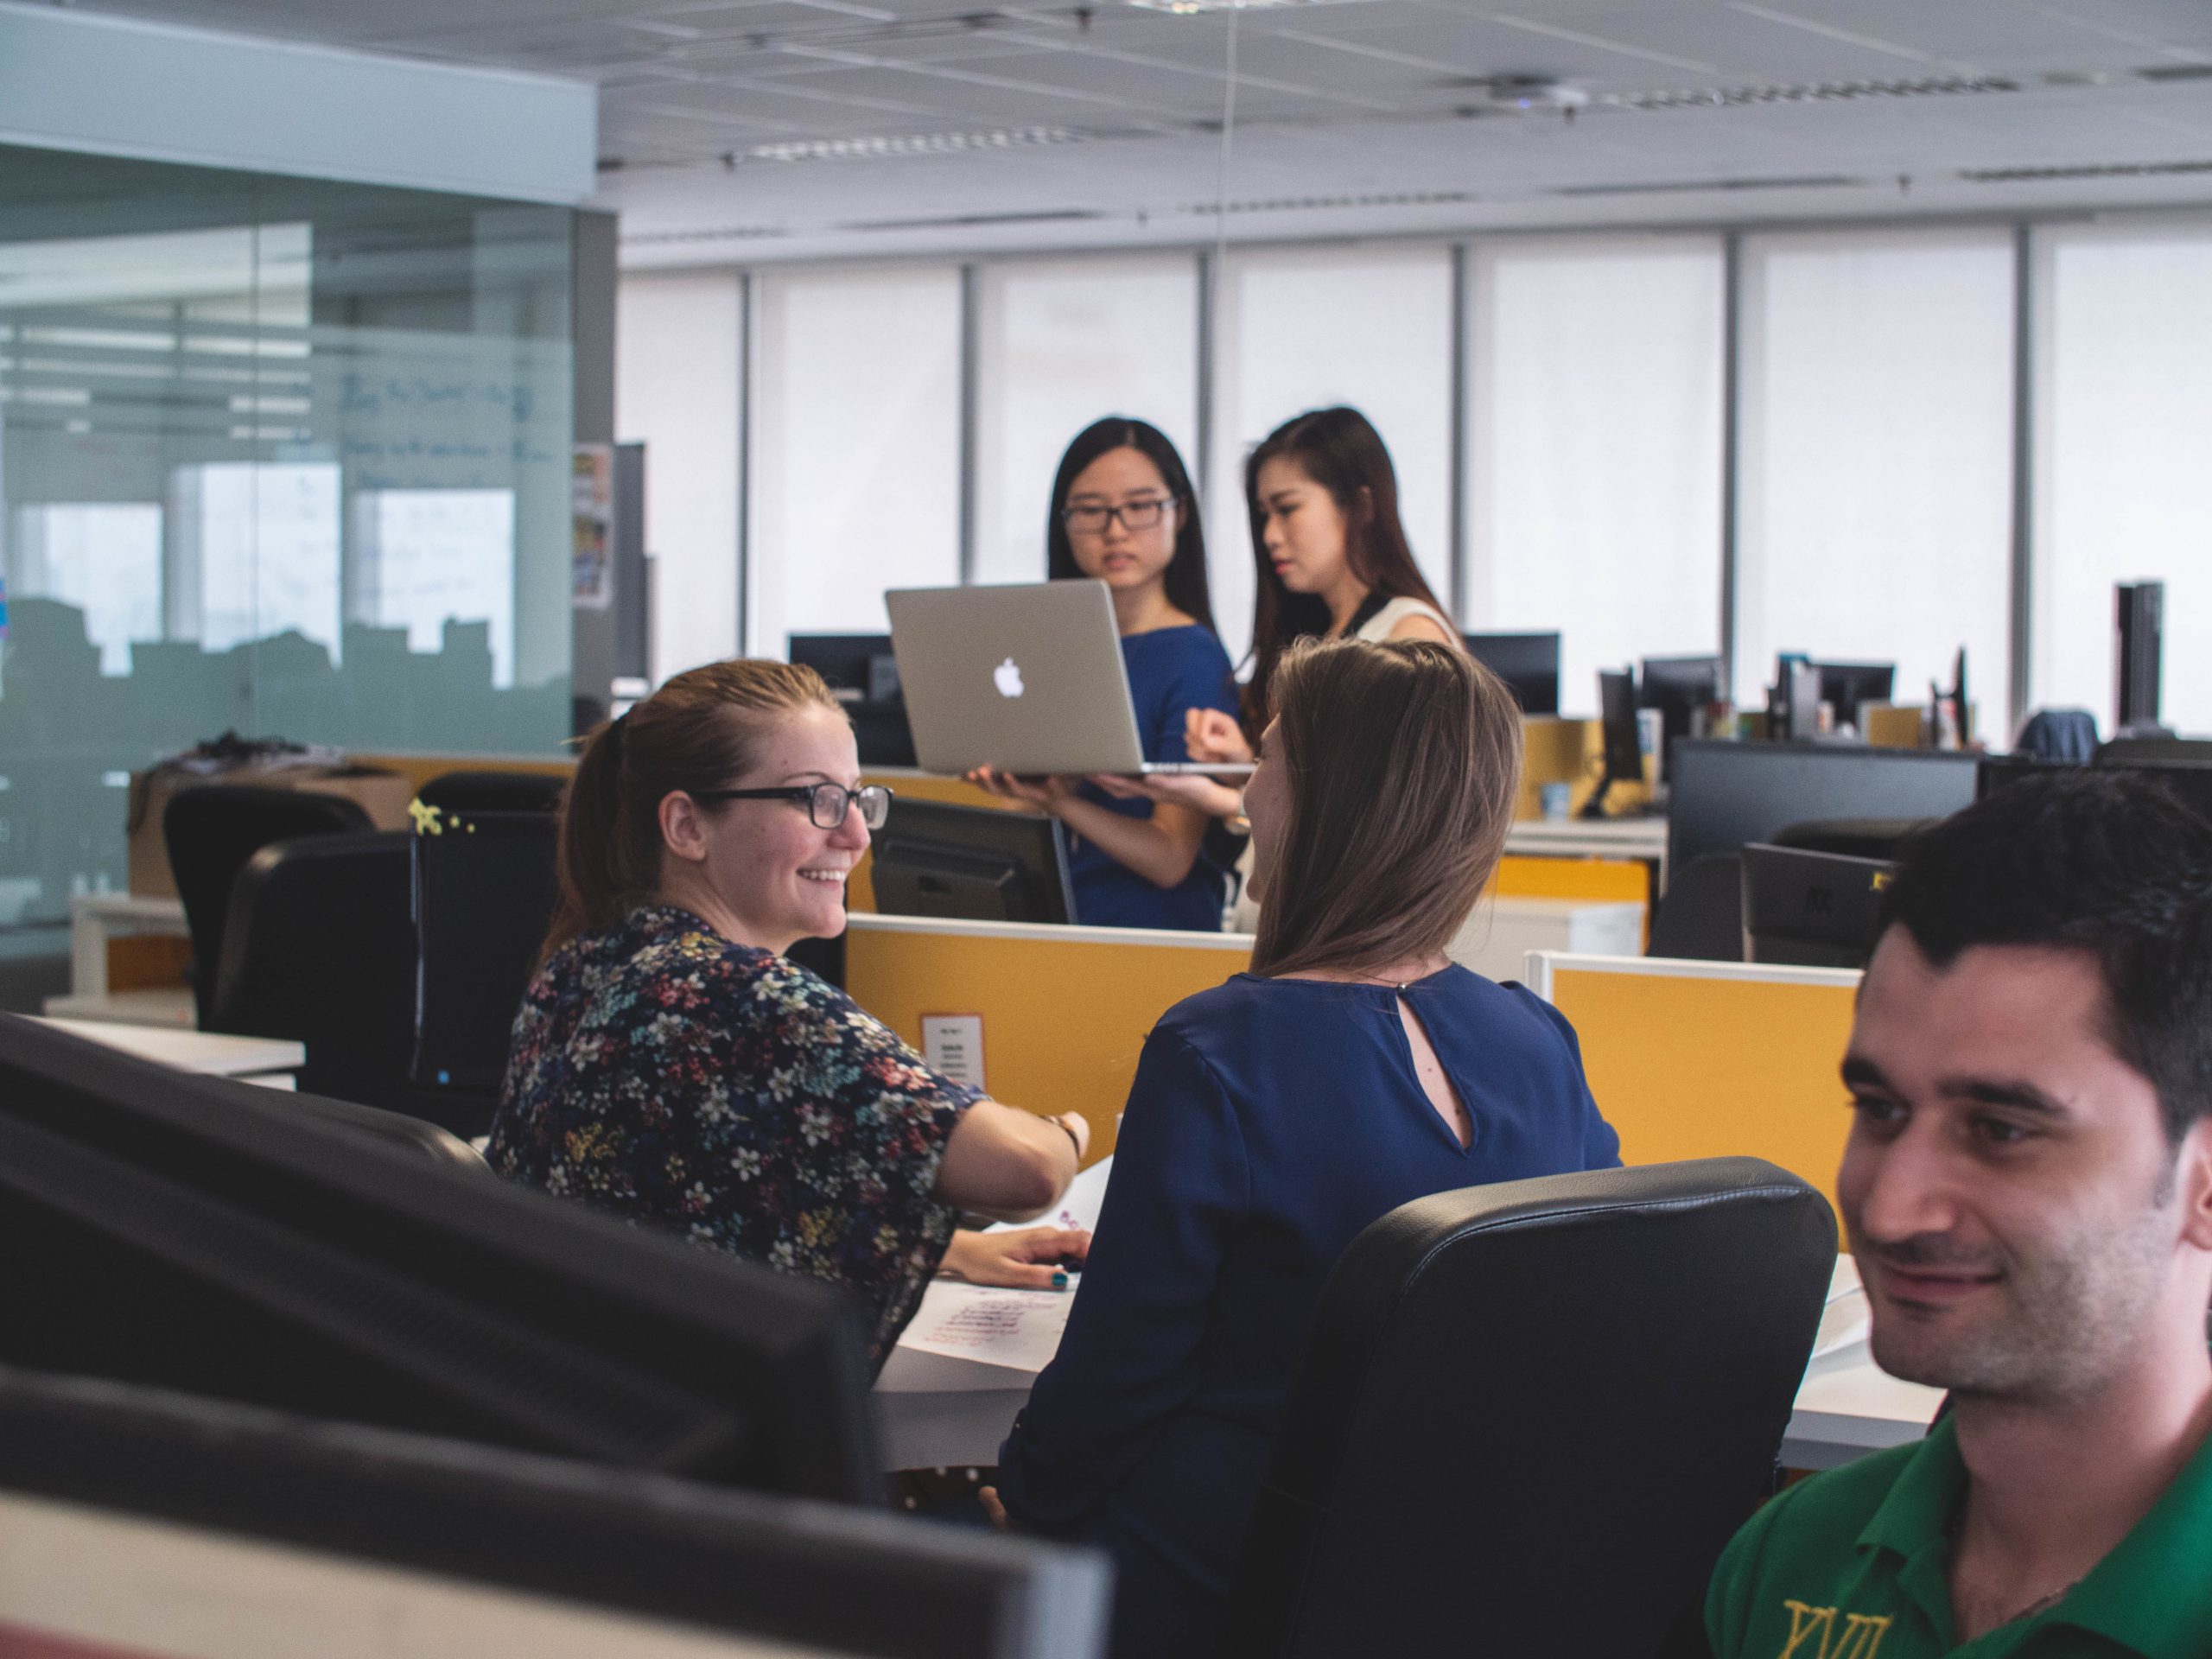 Das Bild zeigt Menschen in einem Büro, die kein Desksharing einsetzen. Bild: Unsplash/Mimi Thian